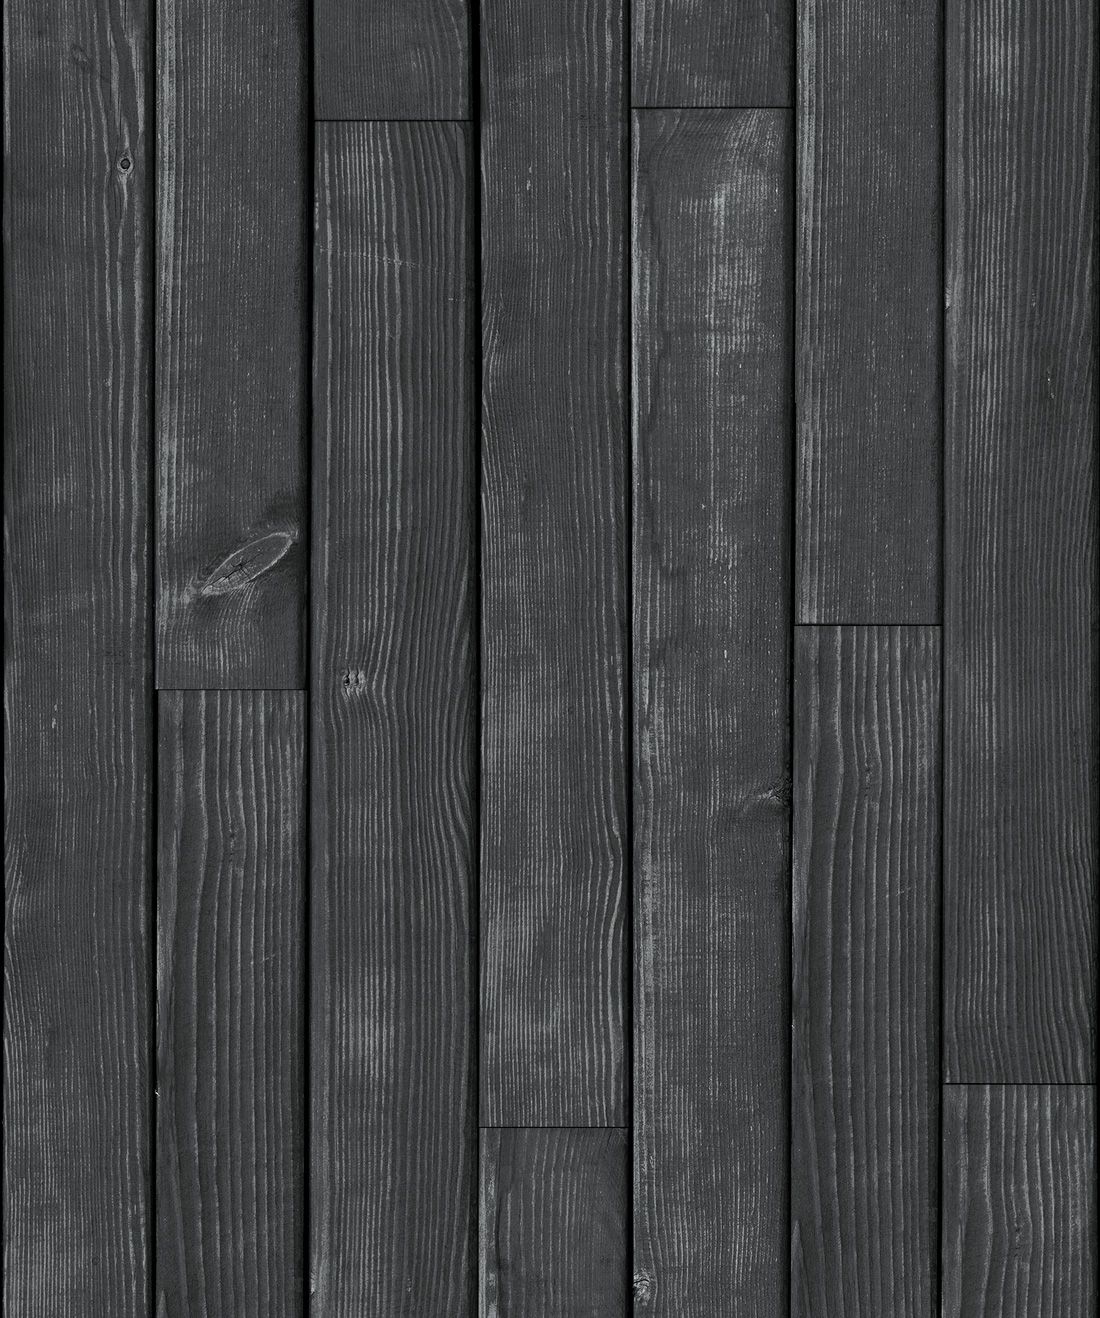 Black Wooden Boards Wallpaper